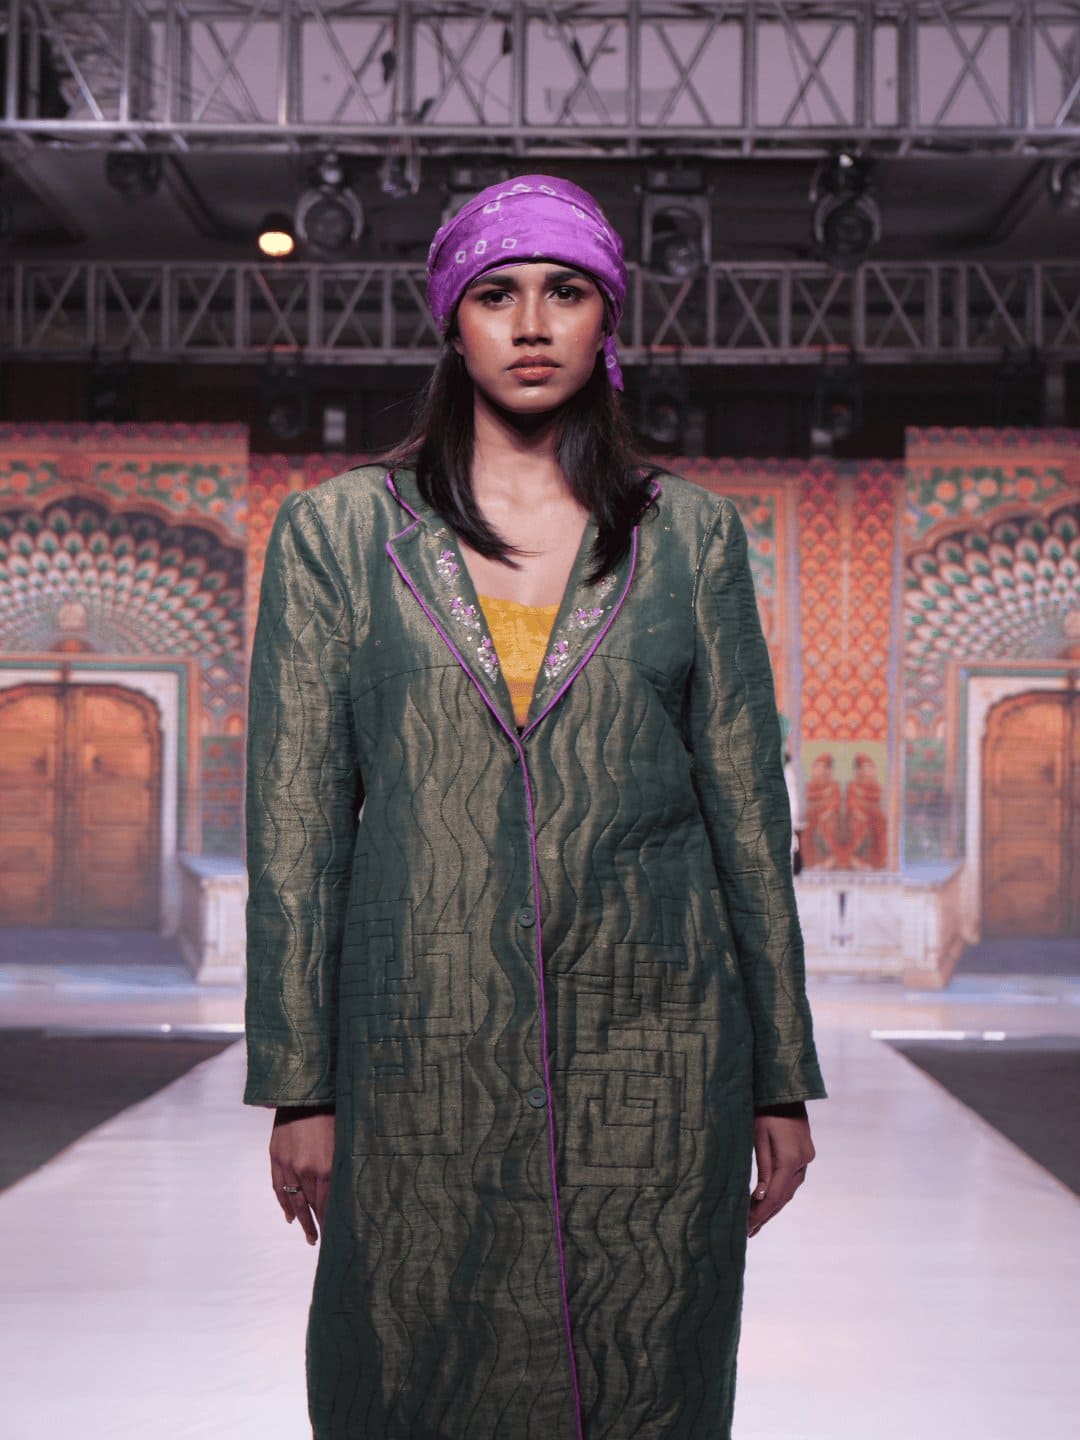 Green Banarsi Silk Women Quilted Jacket - Charkha TalesGreen Banarsi Silk Women Quilted Jacket